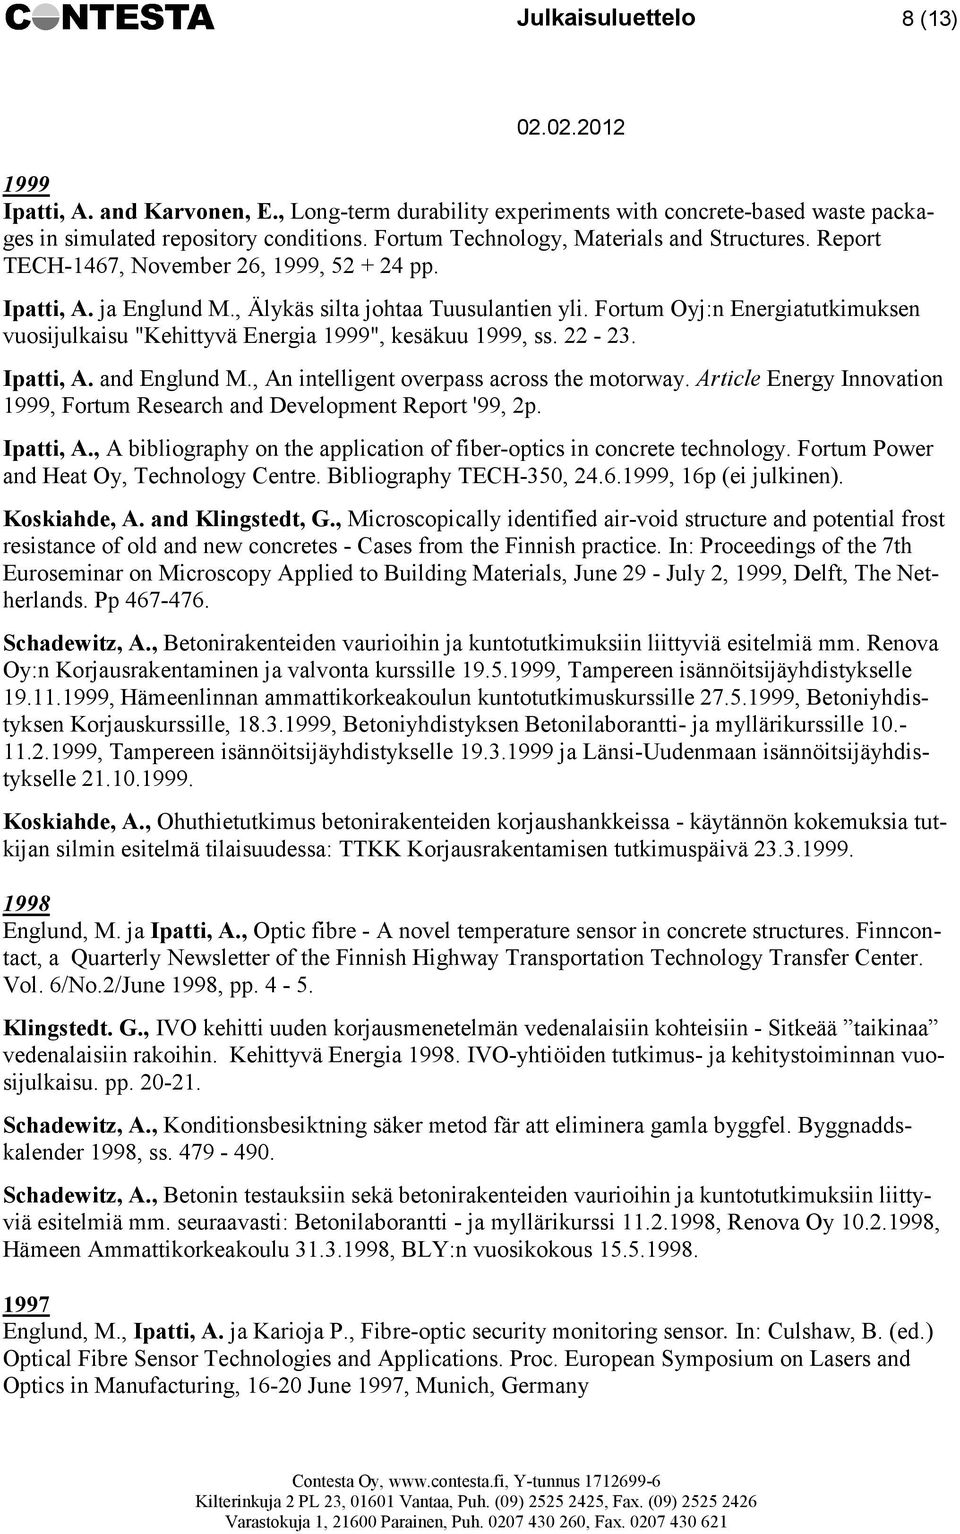 Fortum Oyj:n Energiatutkimuksen vuosijulkaisu "Kehittyvä Energia 1999", kesäkuu 1999, ss. 22-23. Ipatti, A. and Englund M., An intelligent overpass across the motorway.